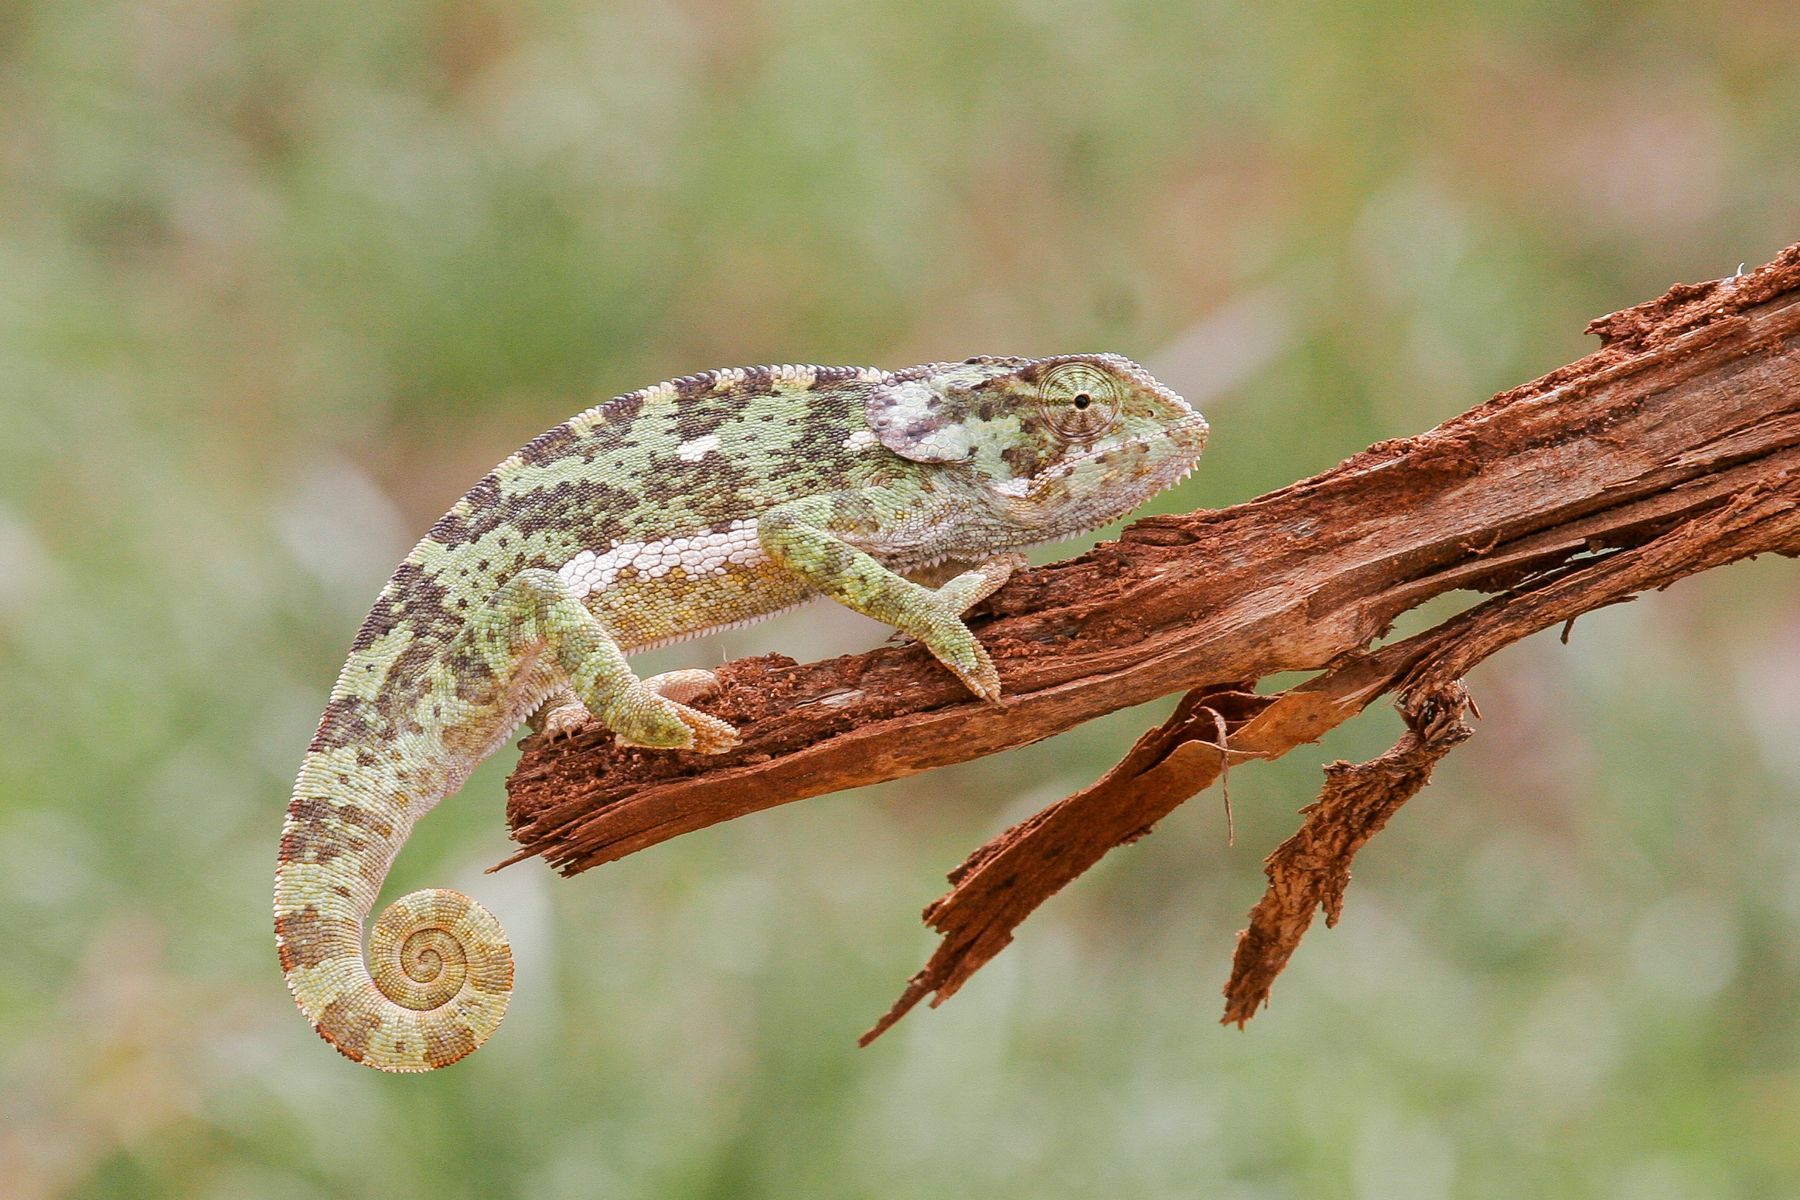 A chameleon in the Ngorongoro woodland